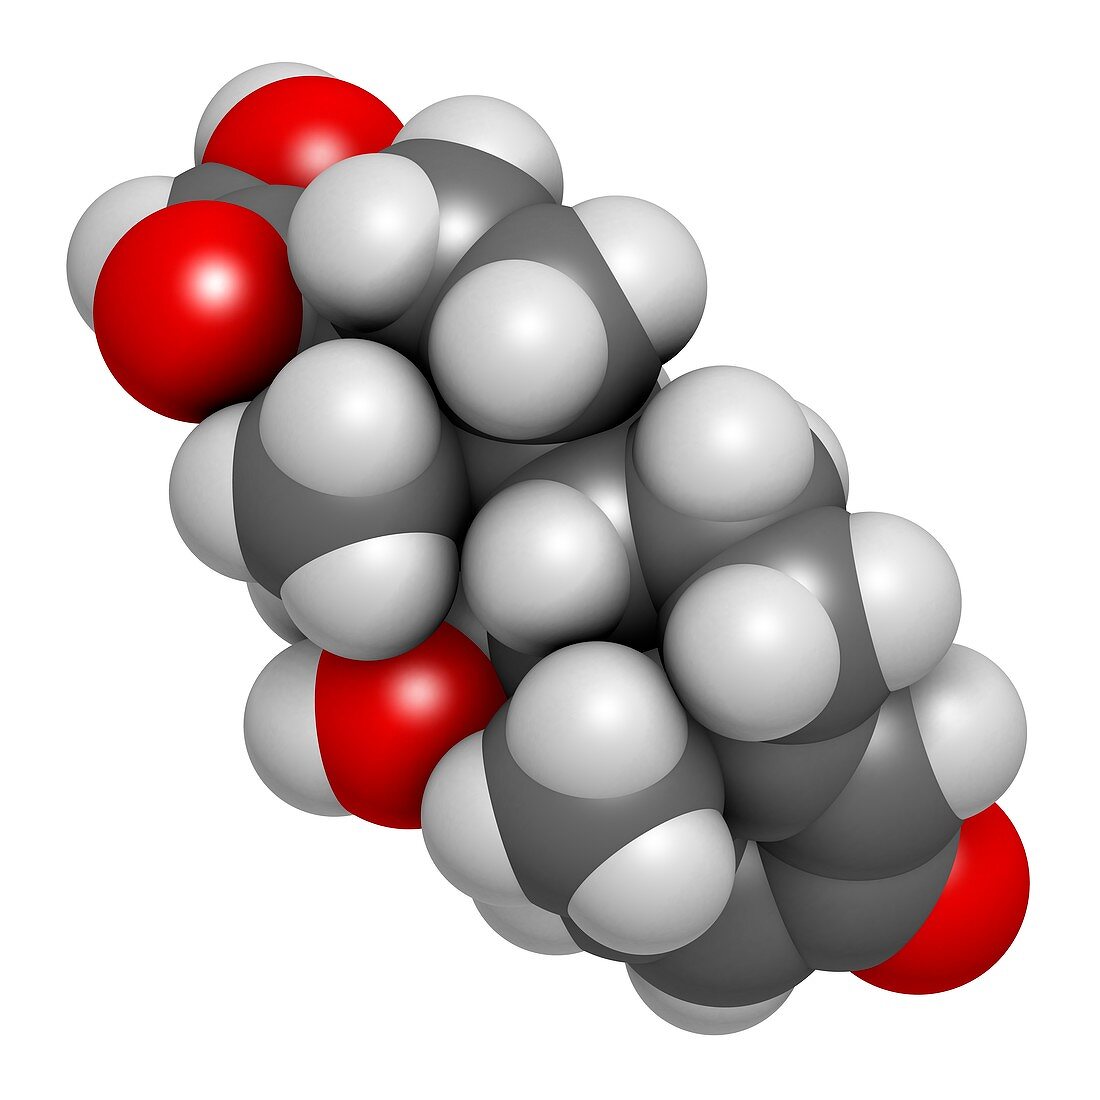 Prednisolone corticosteroid drug molecule